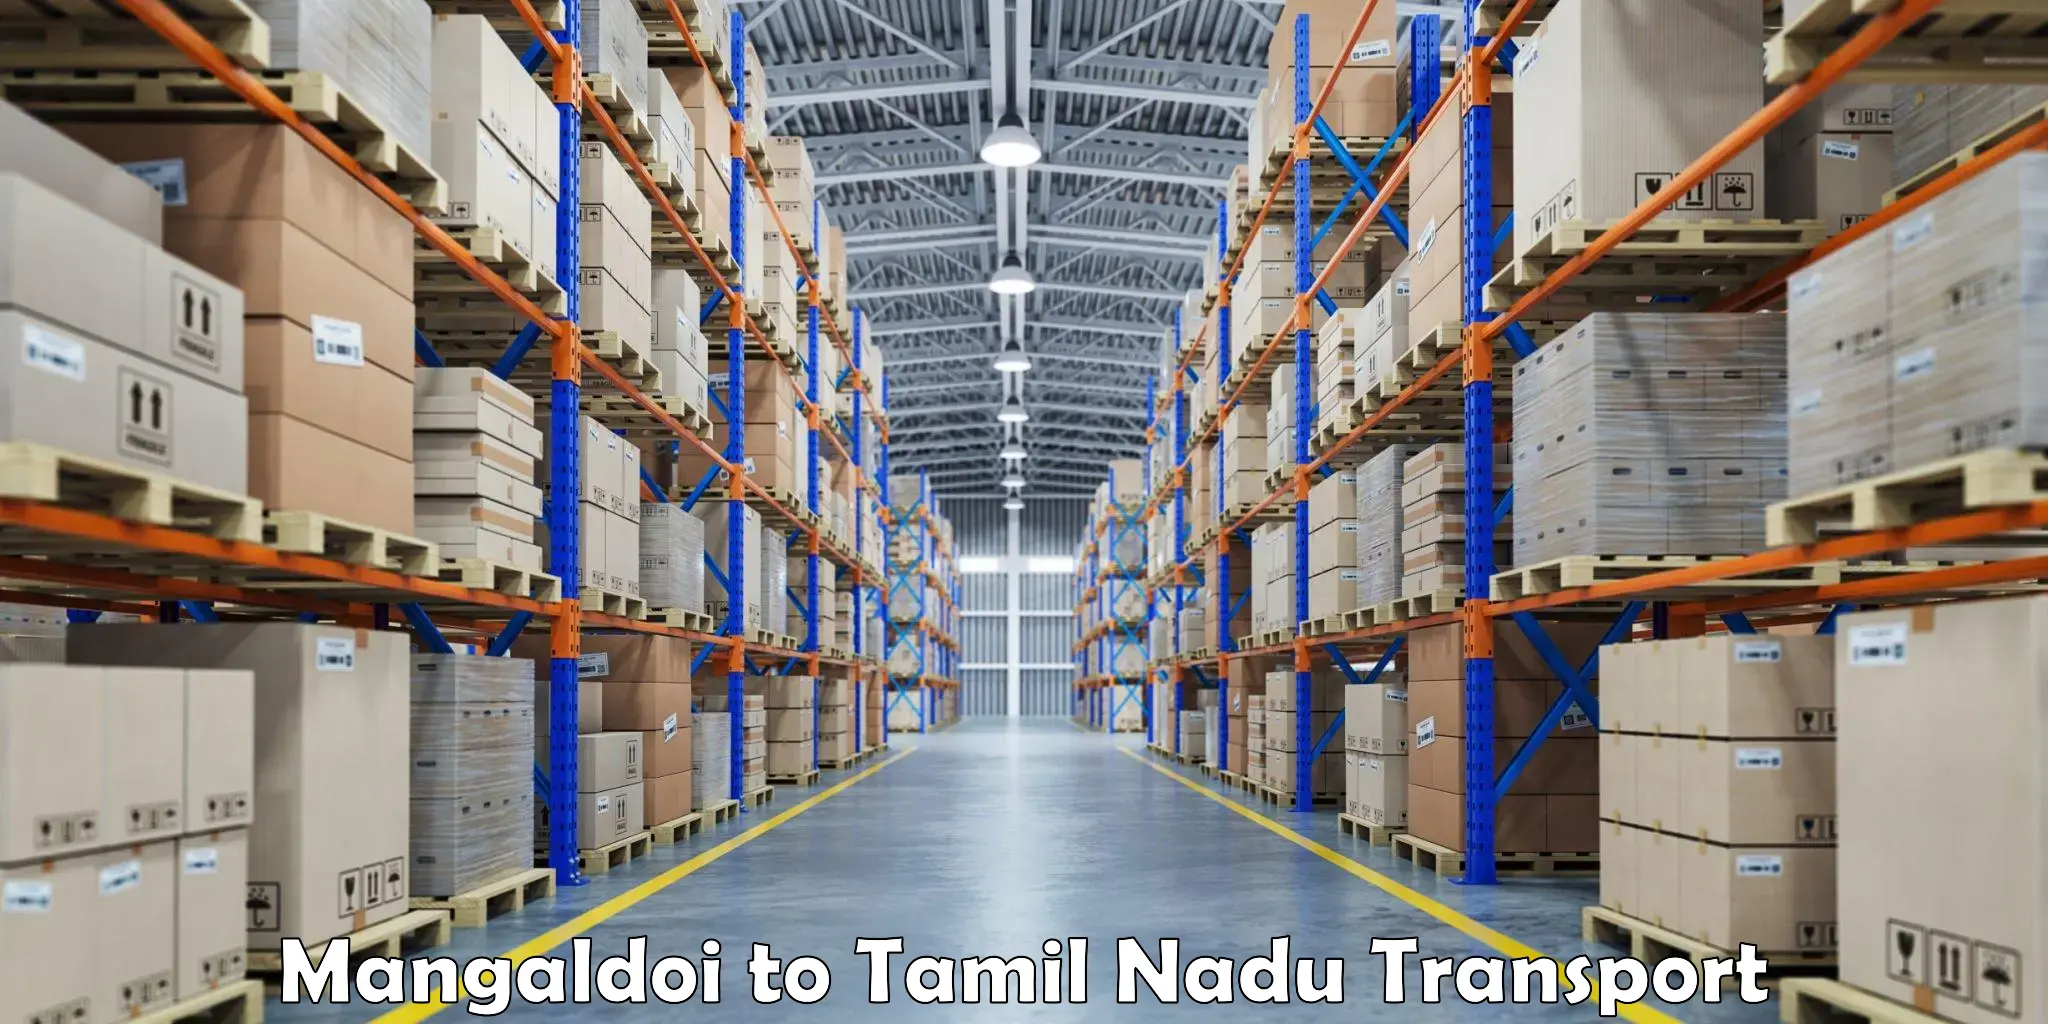 Container transport service Mangaldoi to Dharapuram